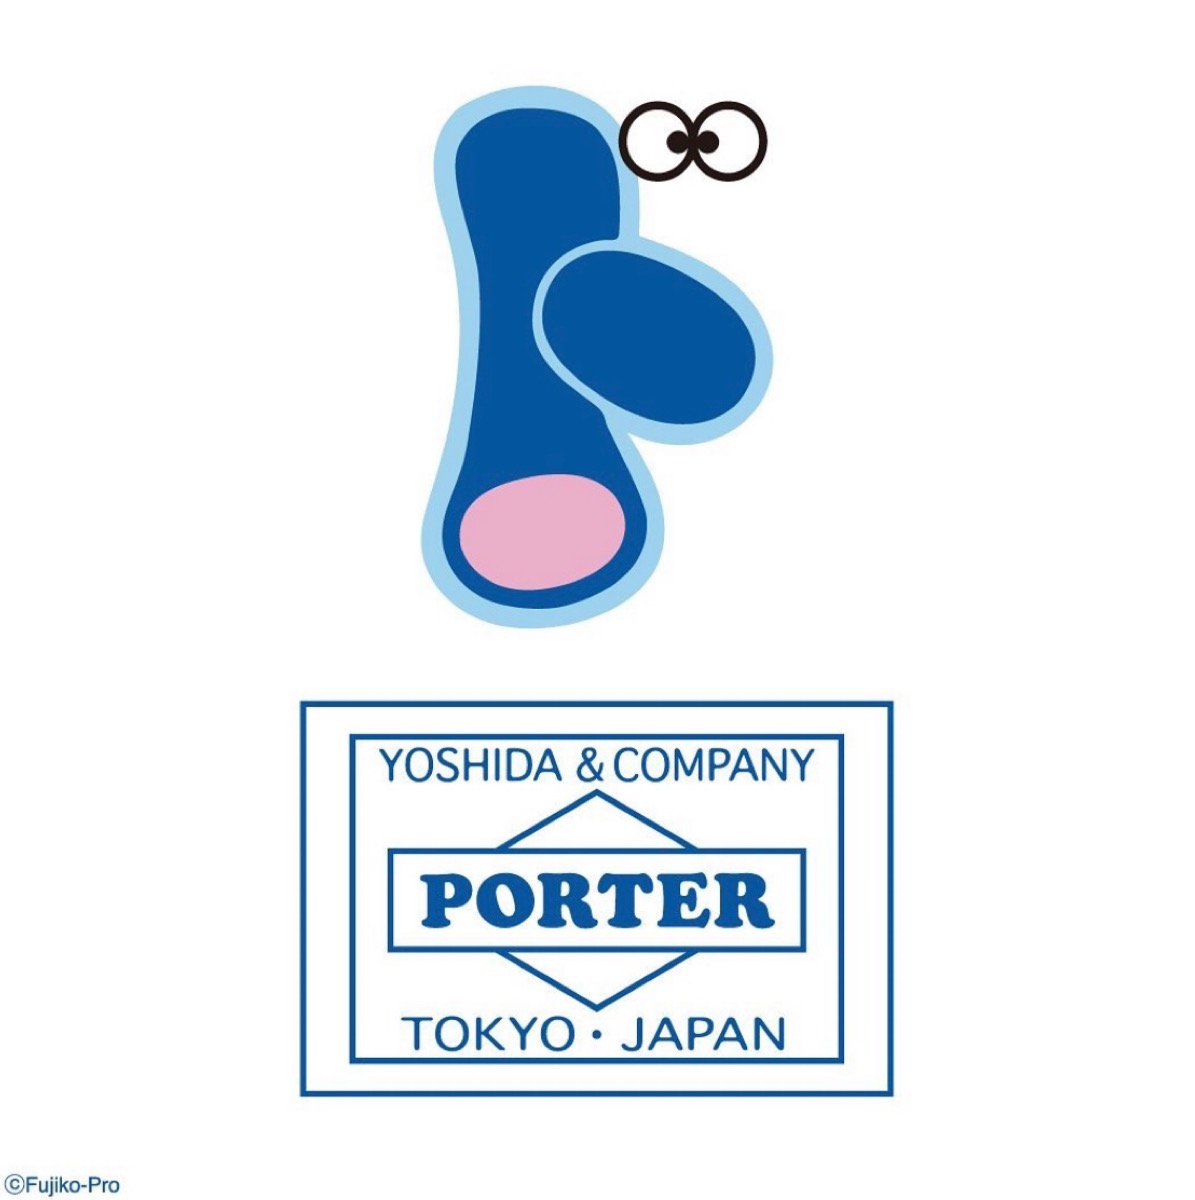 ドラえもん × PORTER コラボコレクションが国内4月28日より発売 